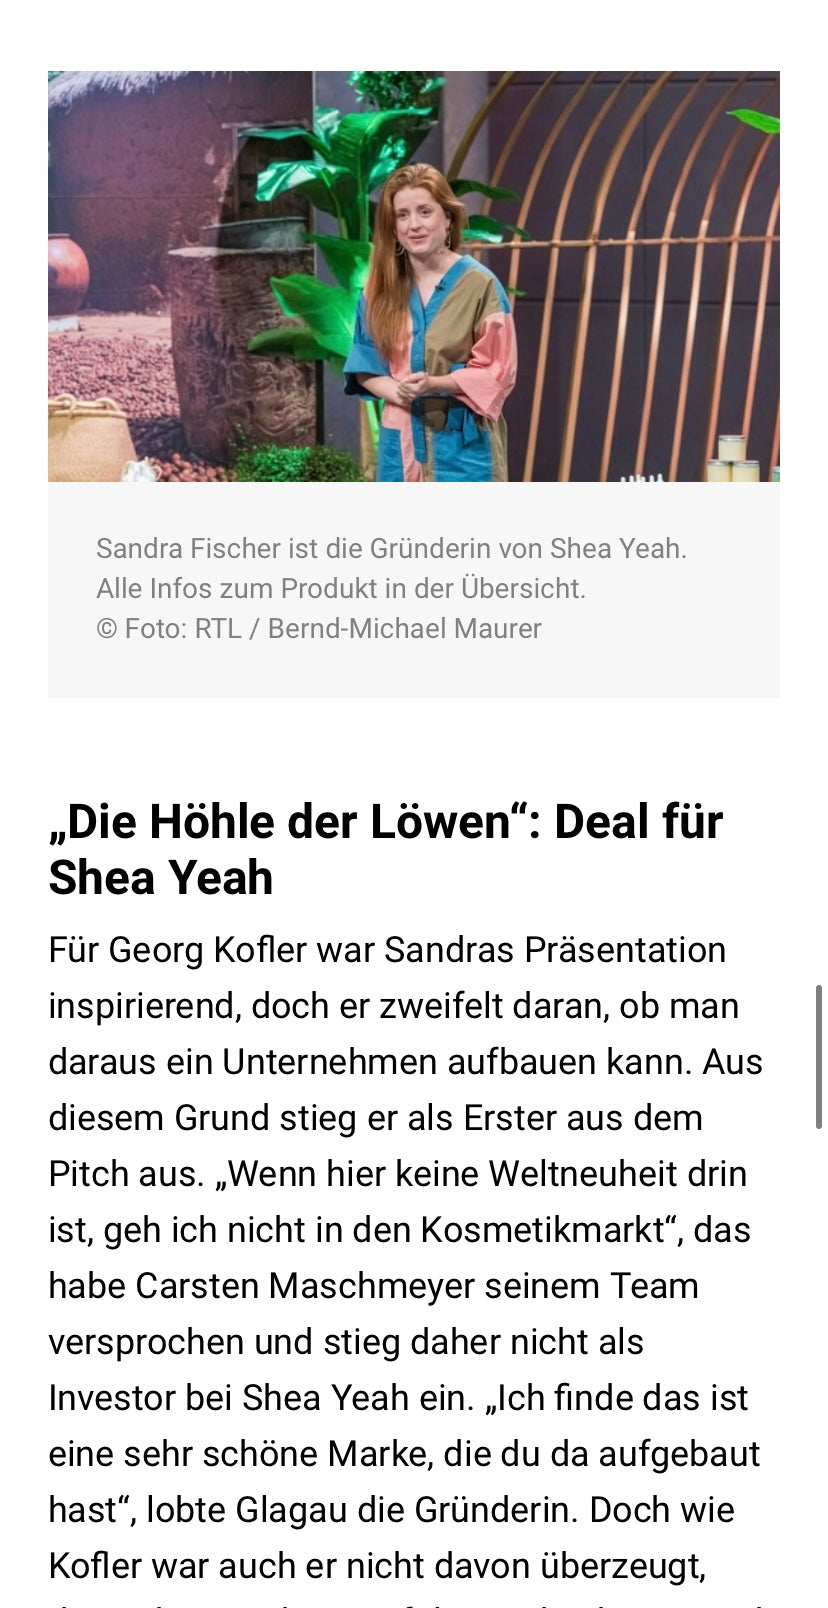 Südwest Presse berichtet über SHEA YEAH und Sandra Fischer, die bei Höhle der Löwen einen Deal gemacht hat